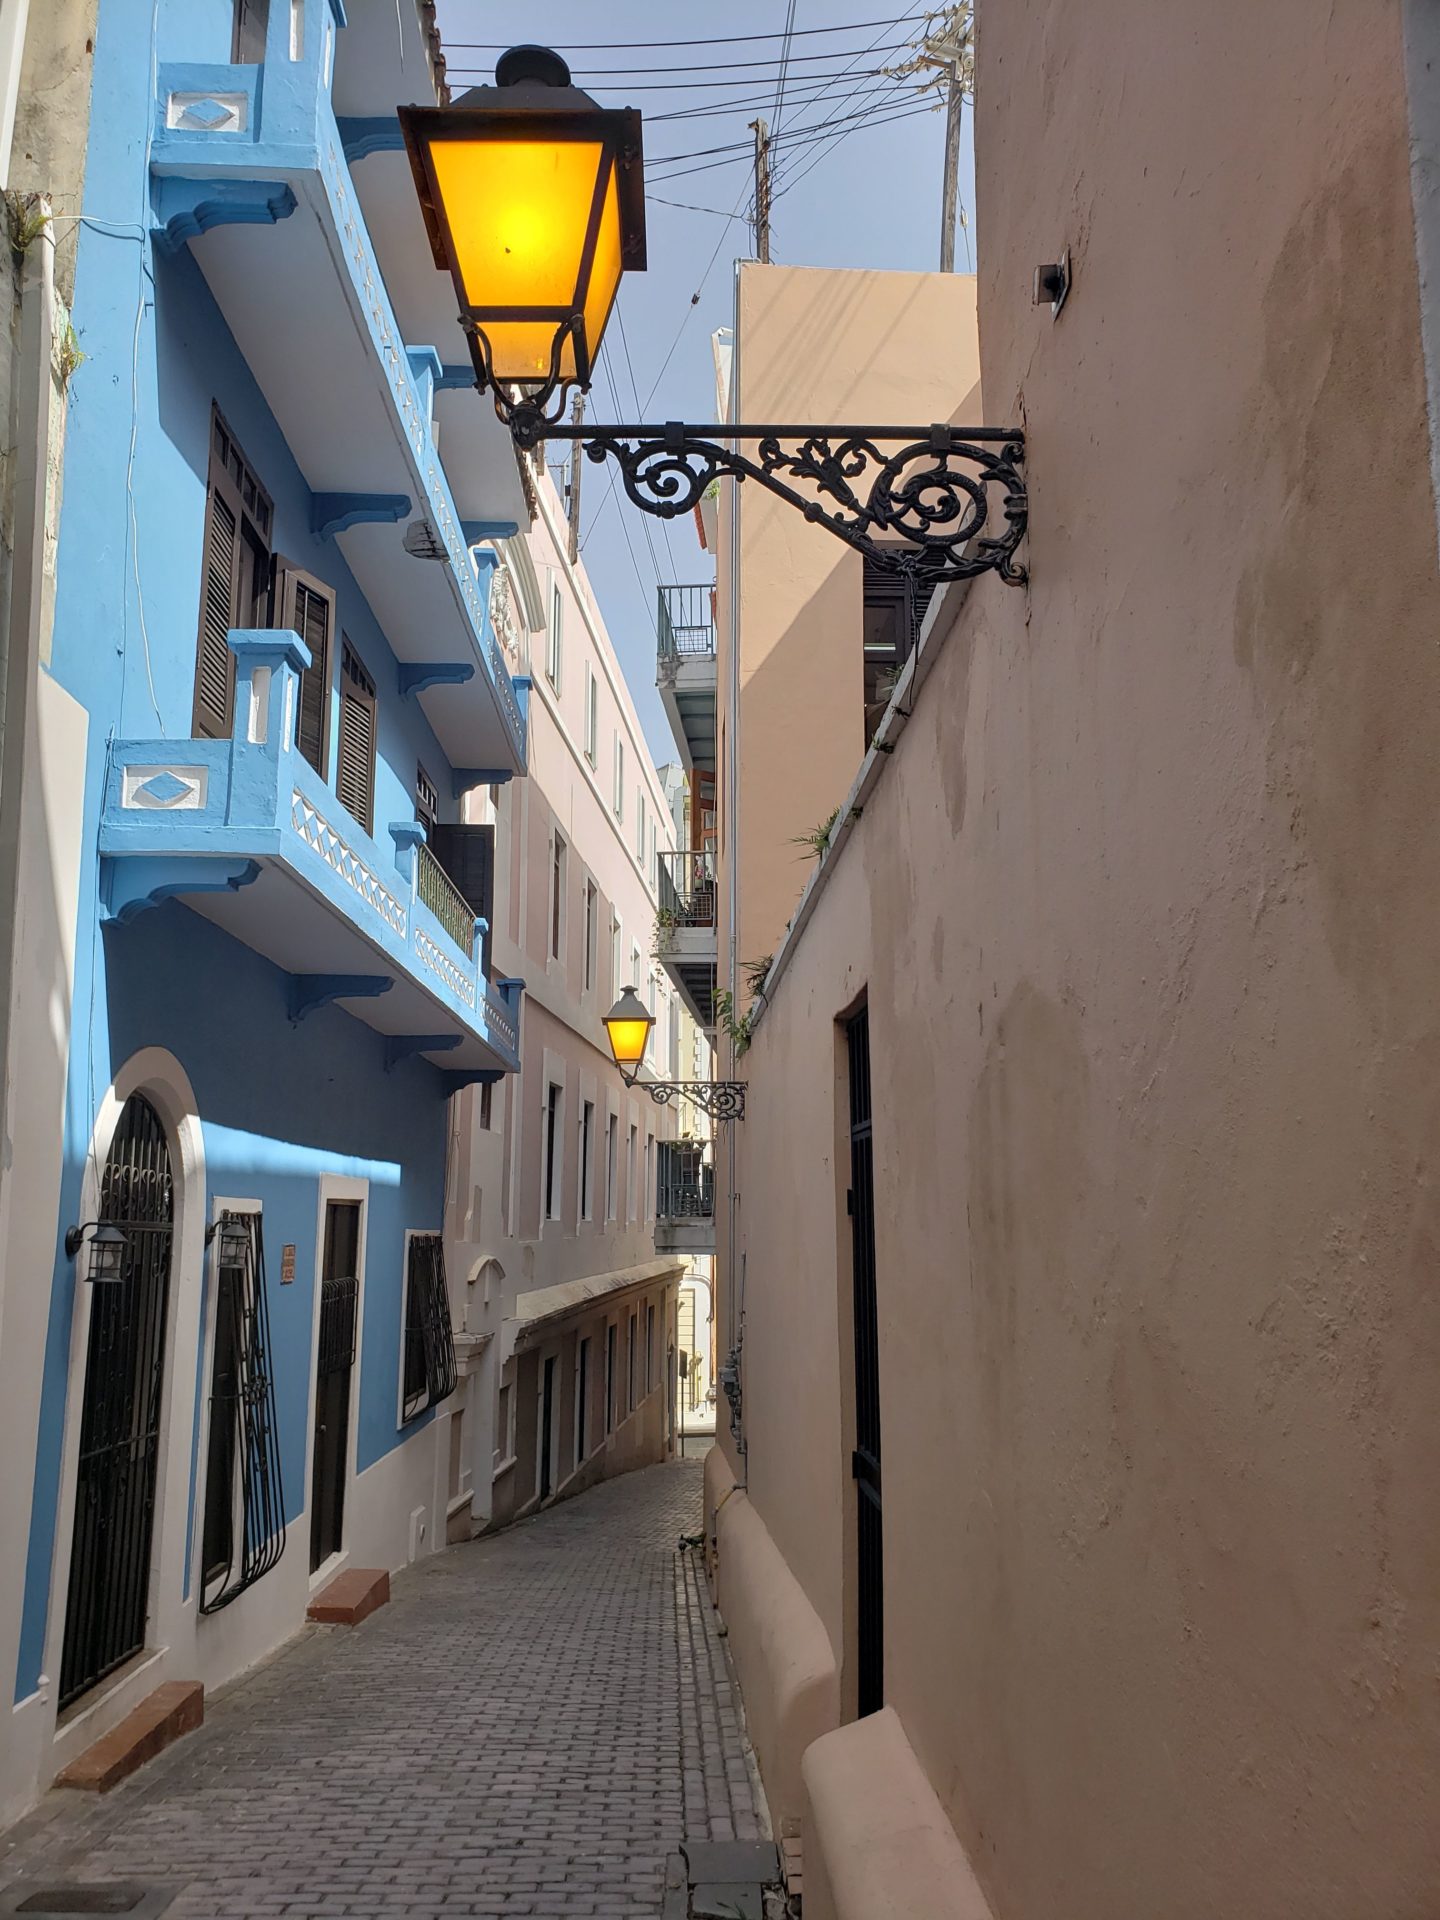 a street light in a narrow alleyway